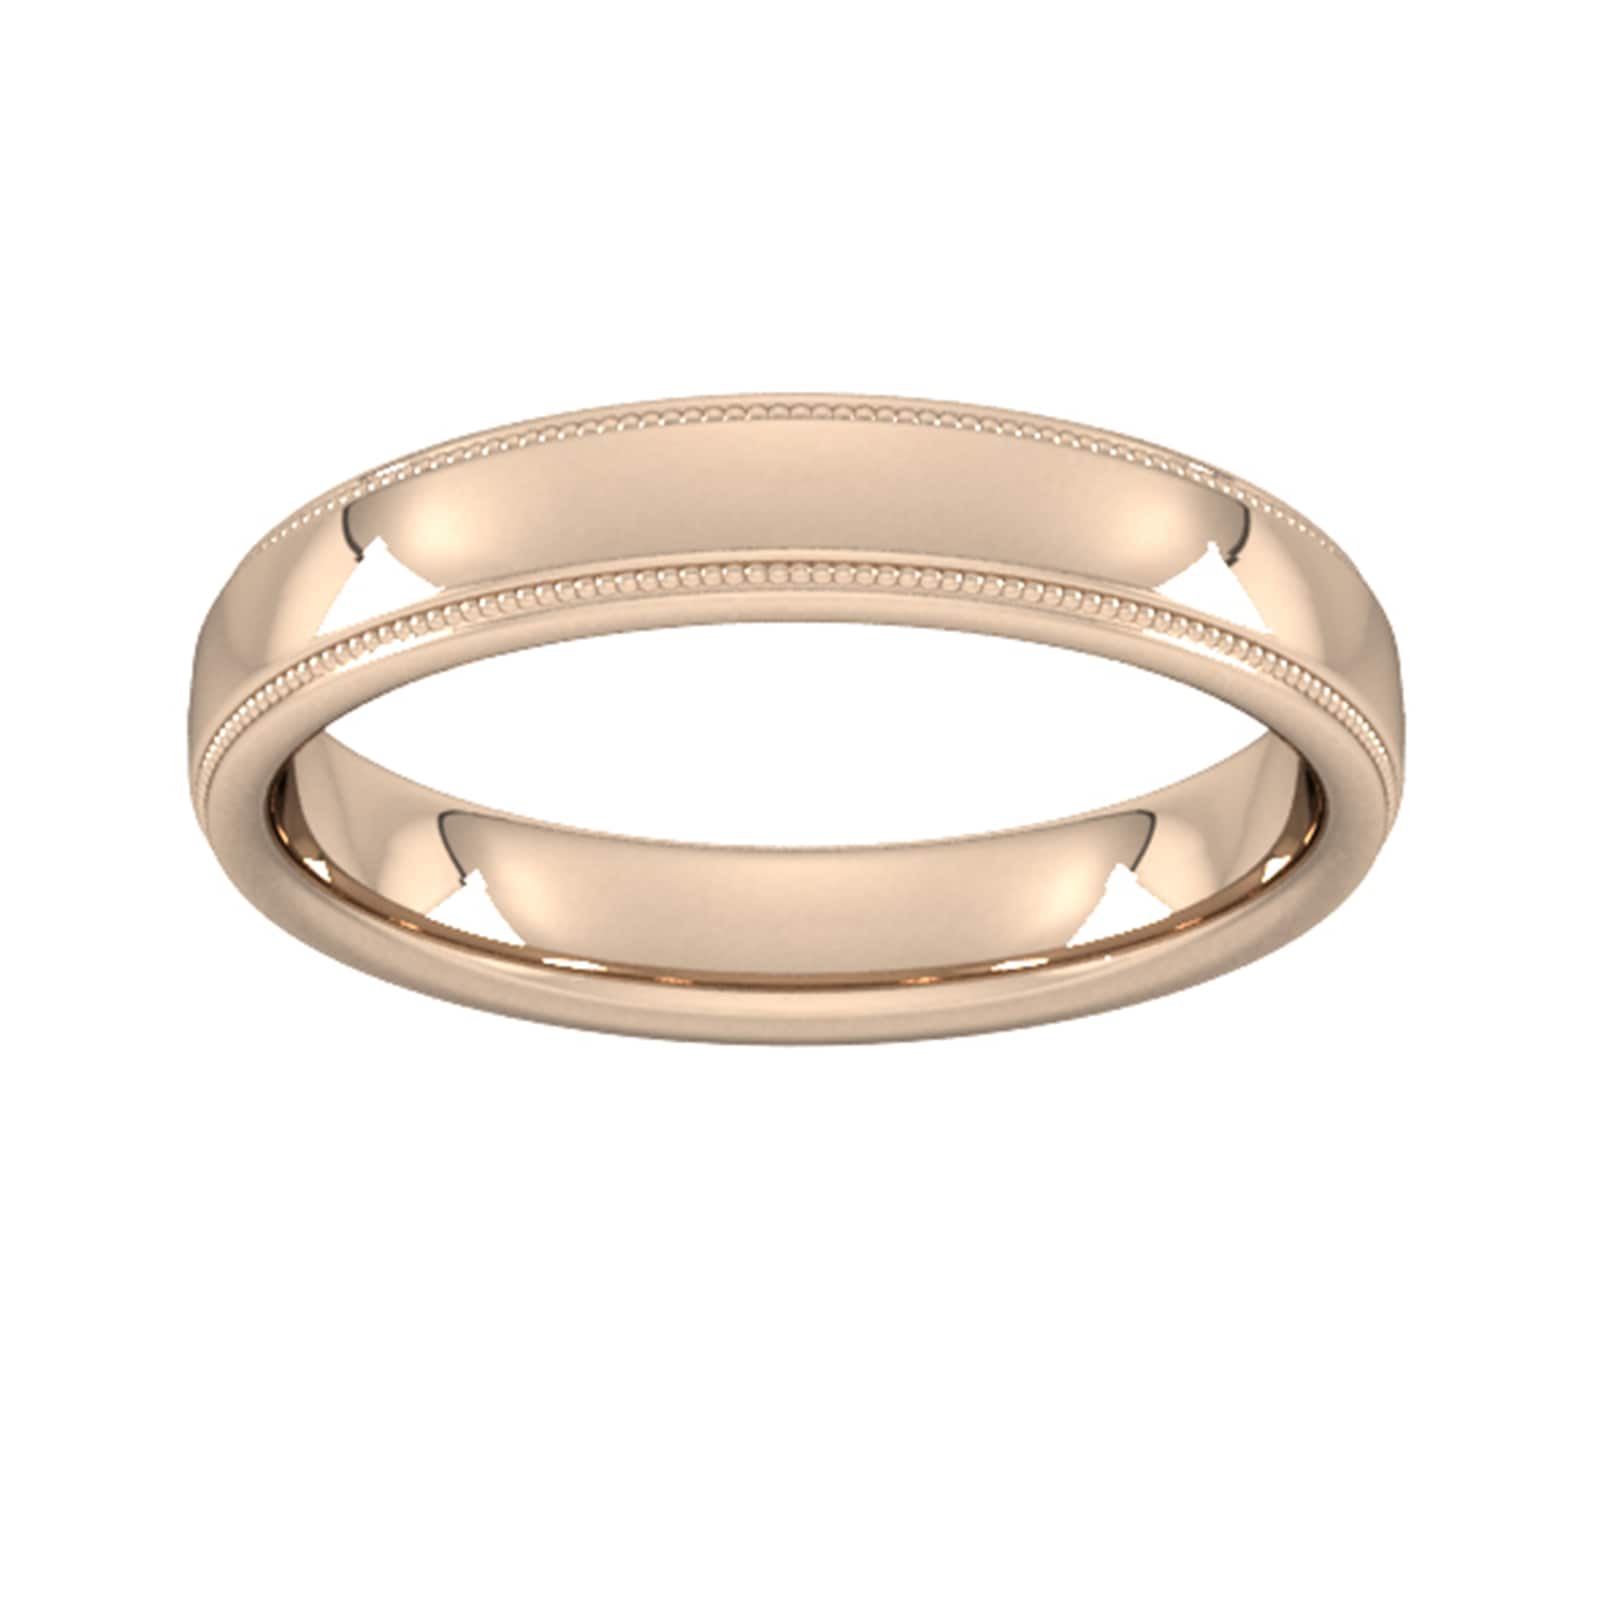 4mm D Shape Heavy Milgrain Edge Wedding Ring In 18 Carat Rose Gold - Ring Size J